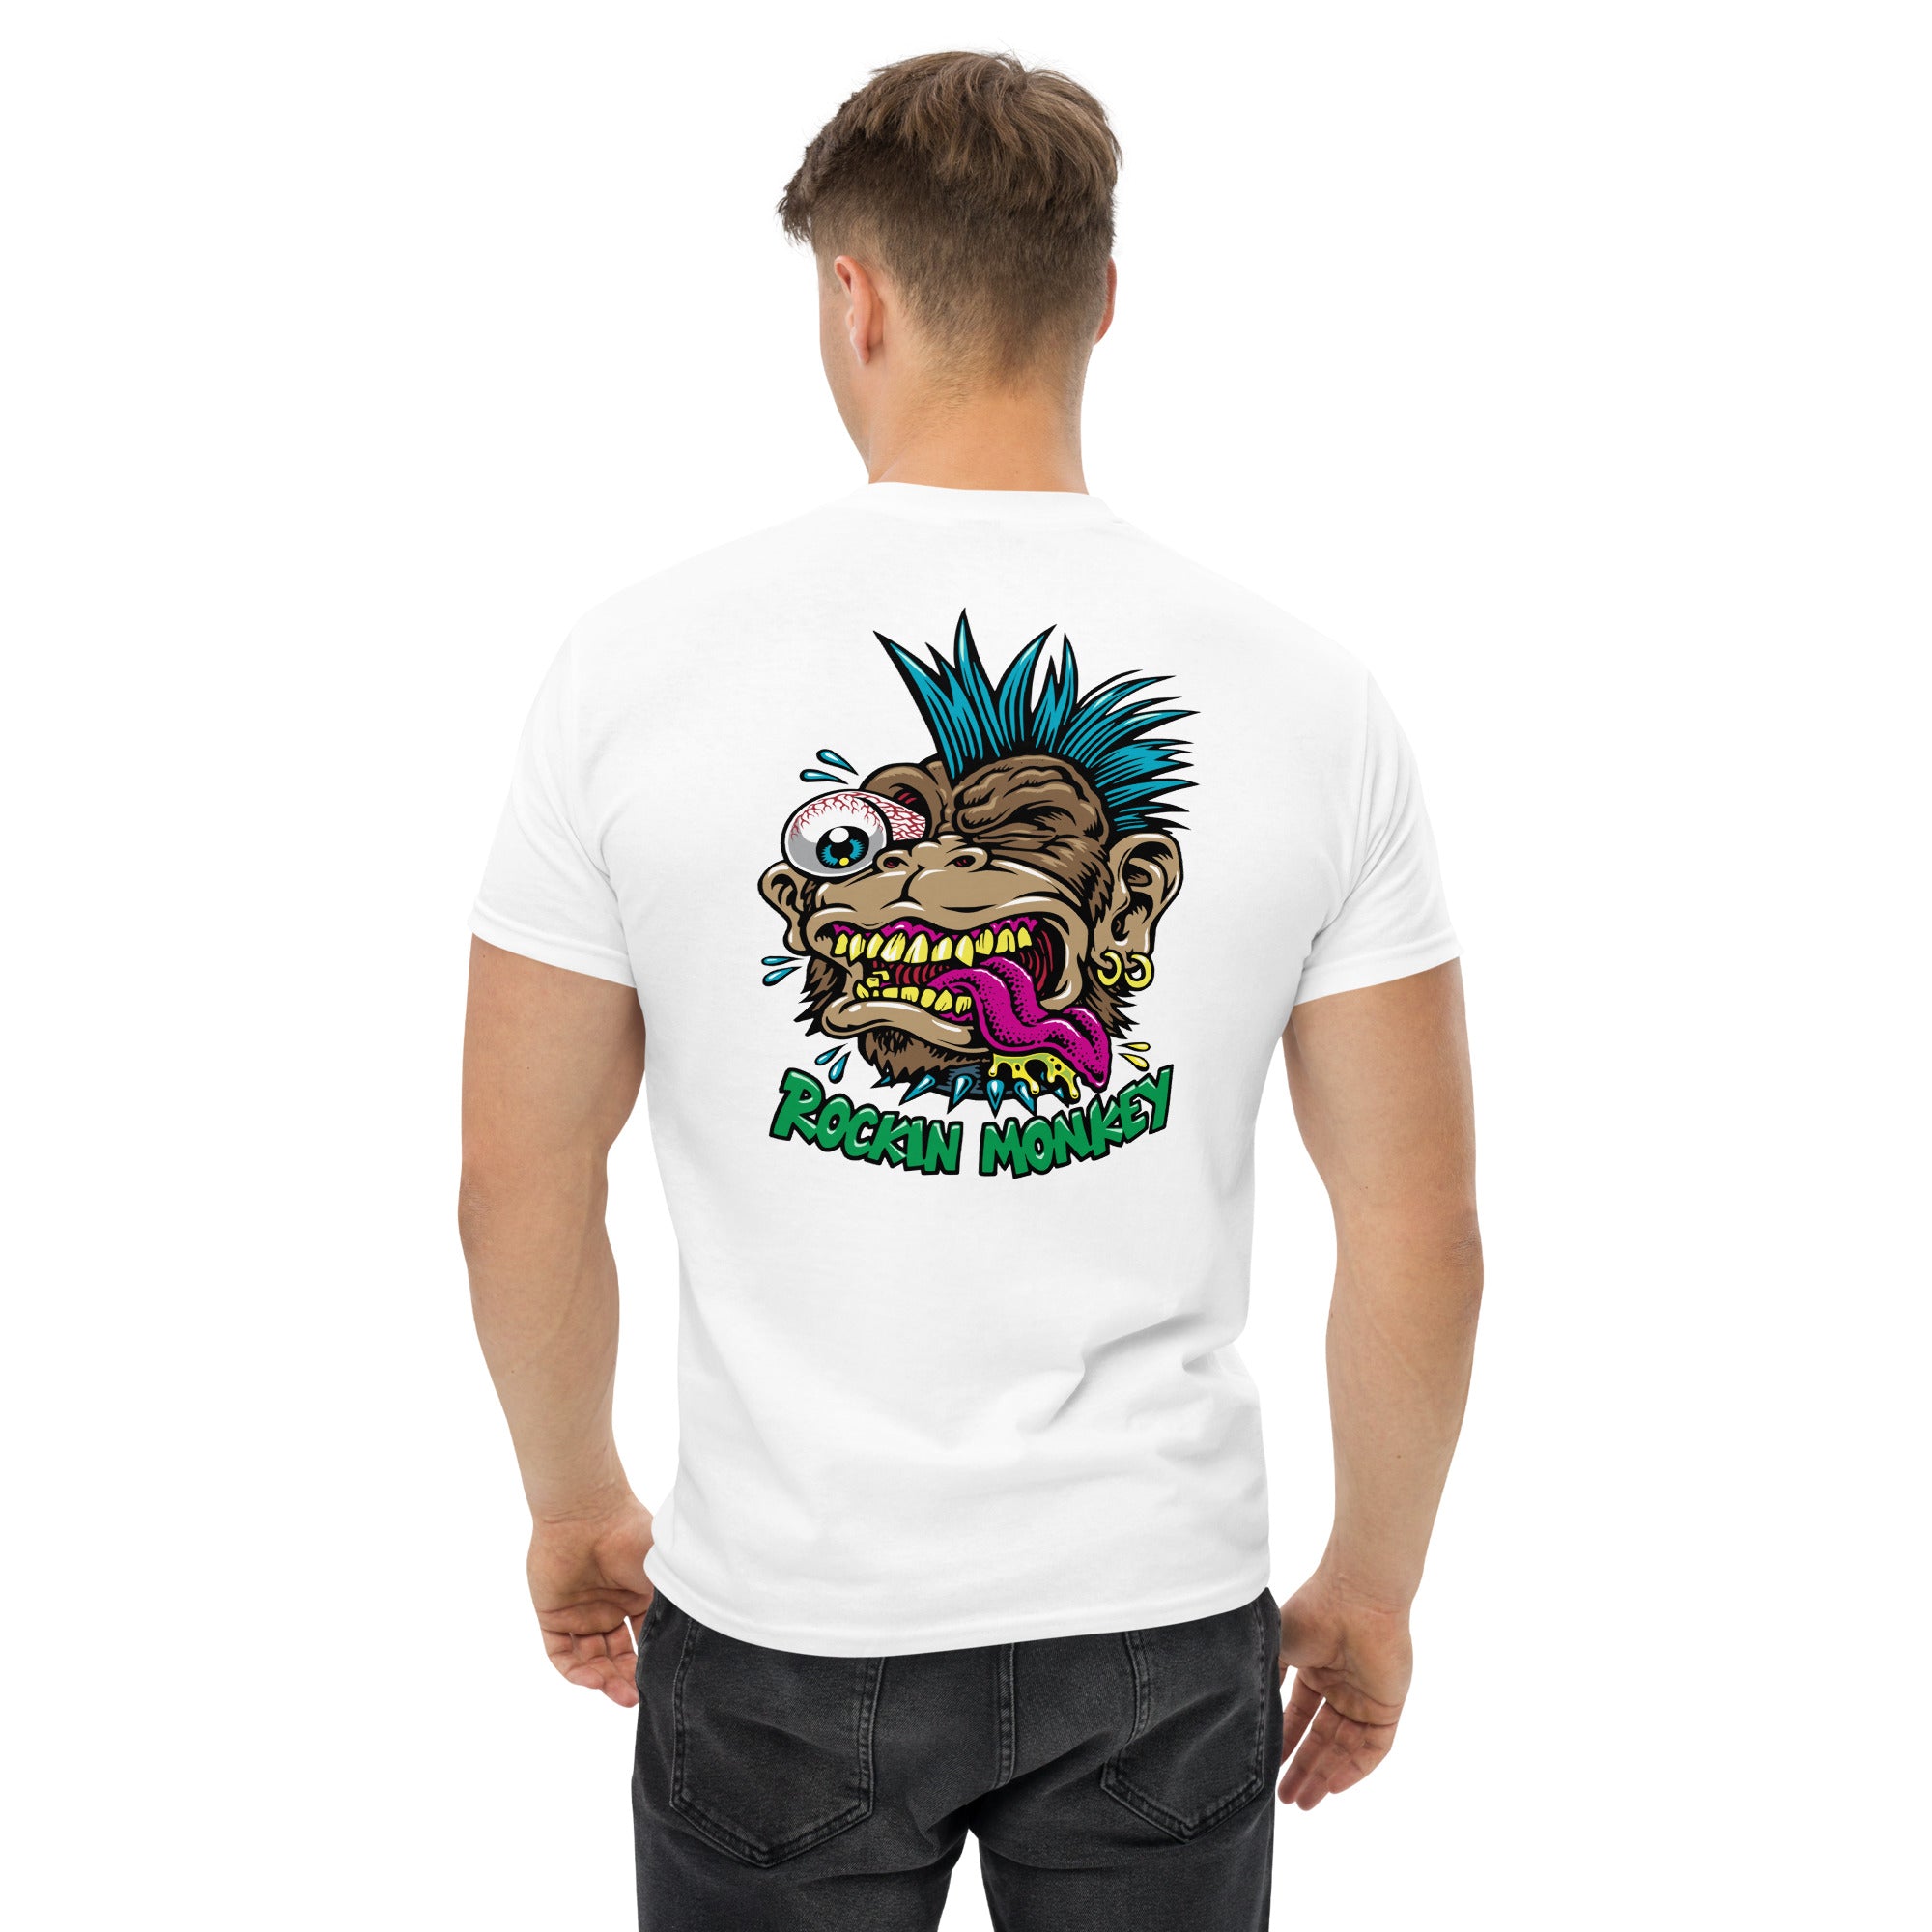 Jimbo Phillips x Rockin Monkey T-Shirt